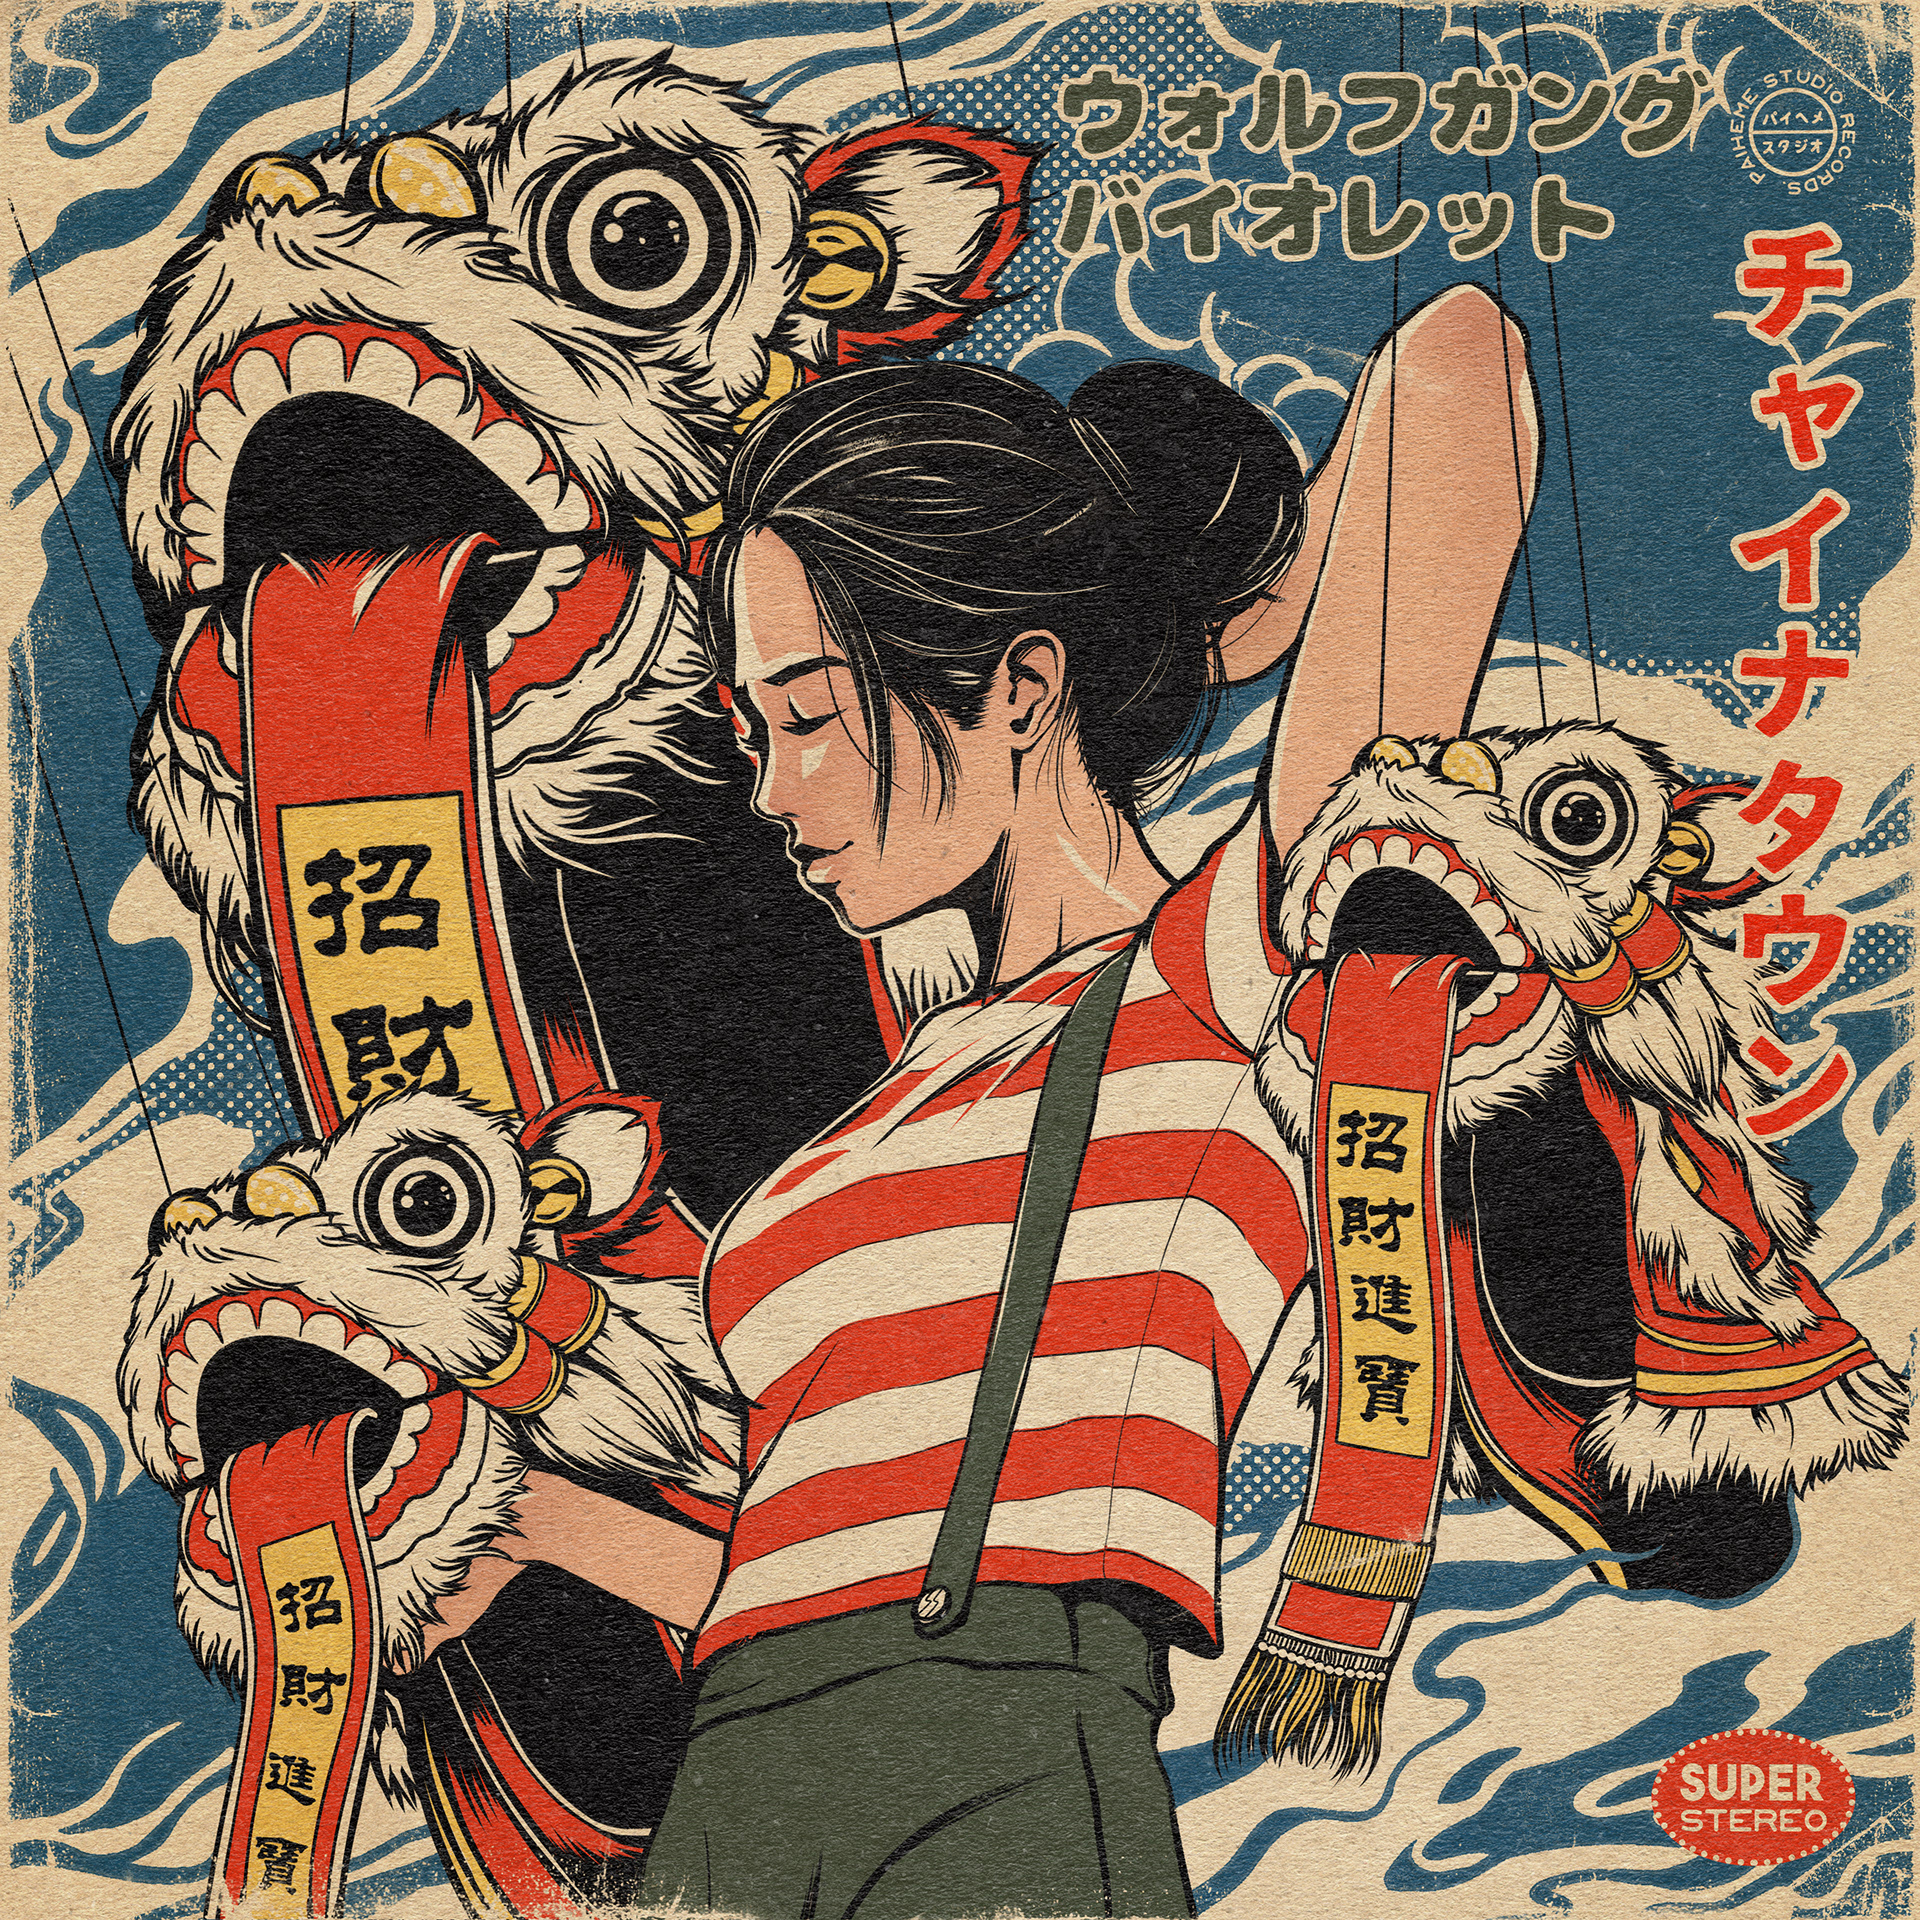 Affiche d'art Pop Culture Japonaise - Sayonara, par Paiheme studio